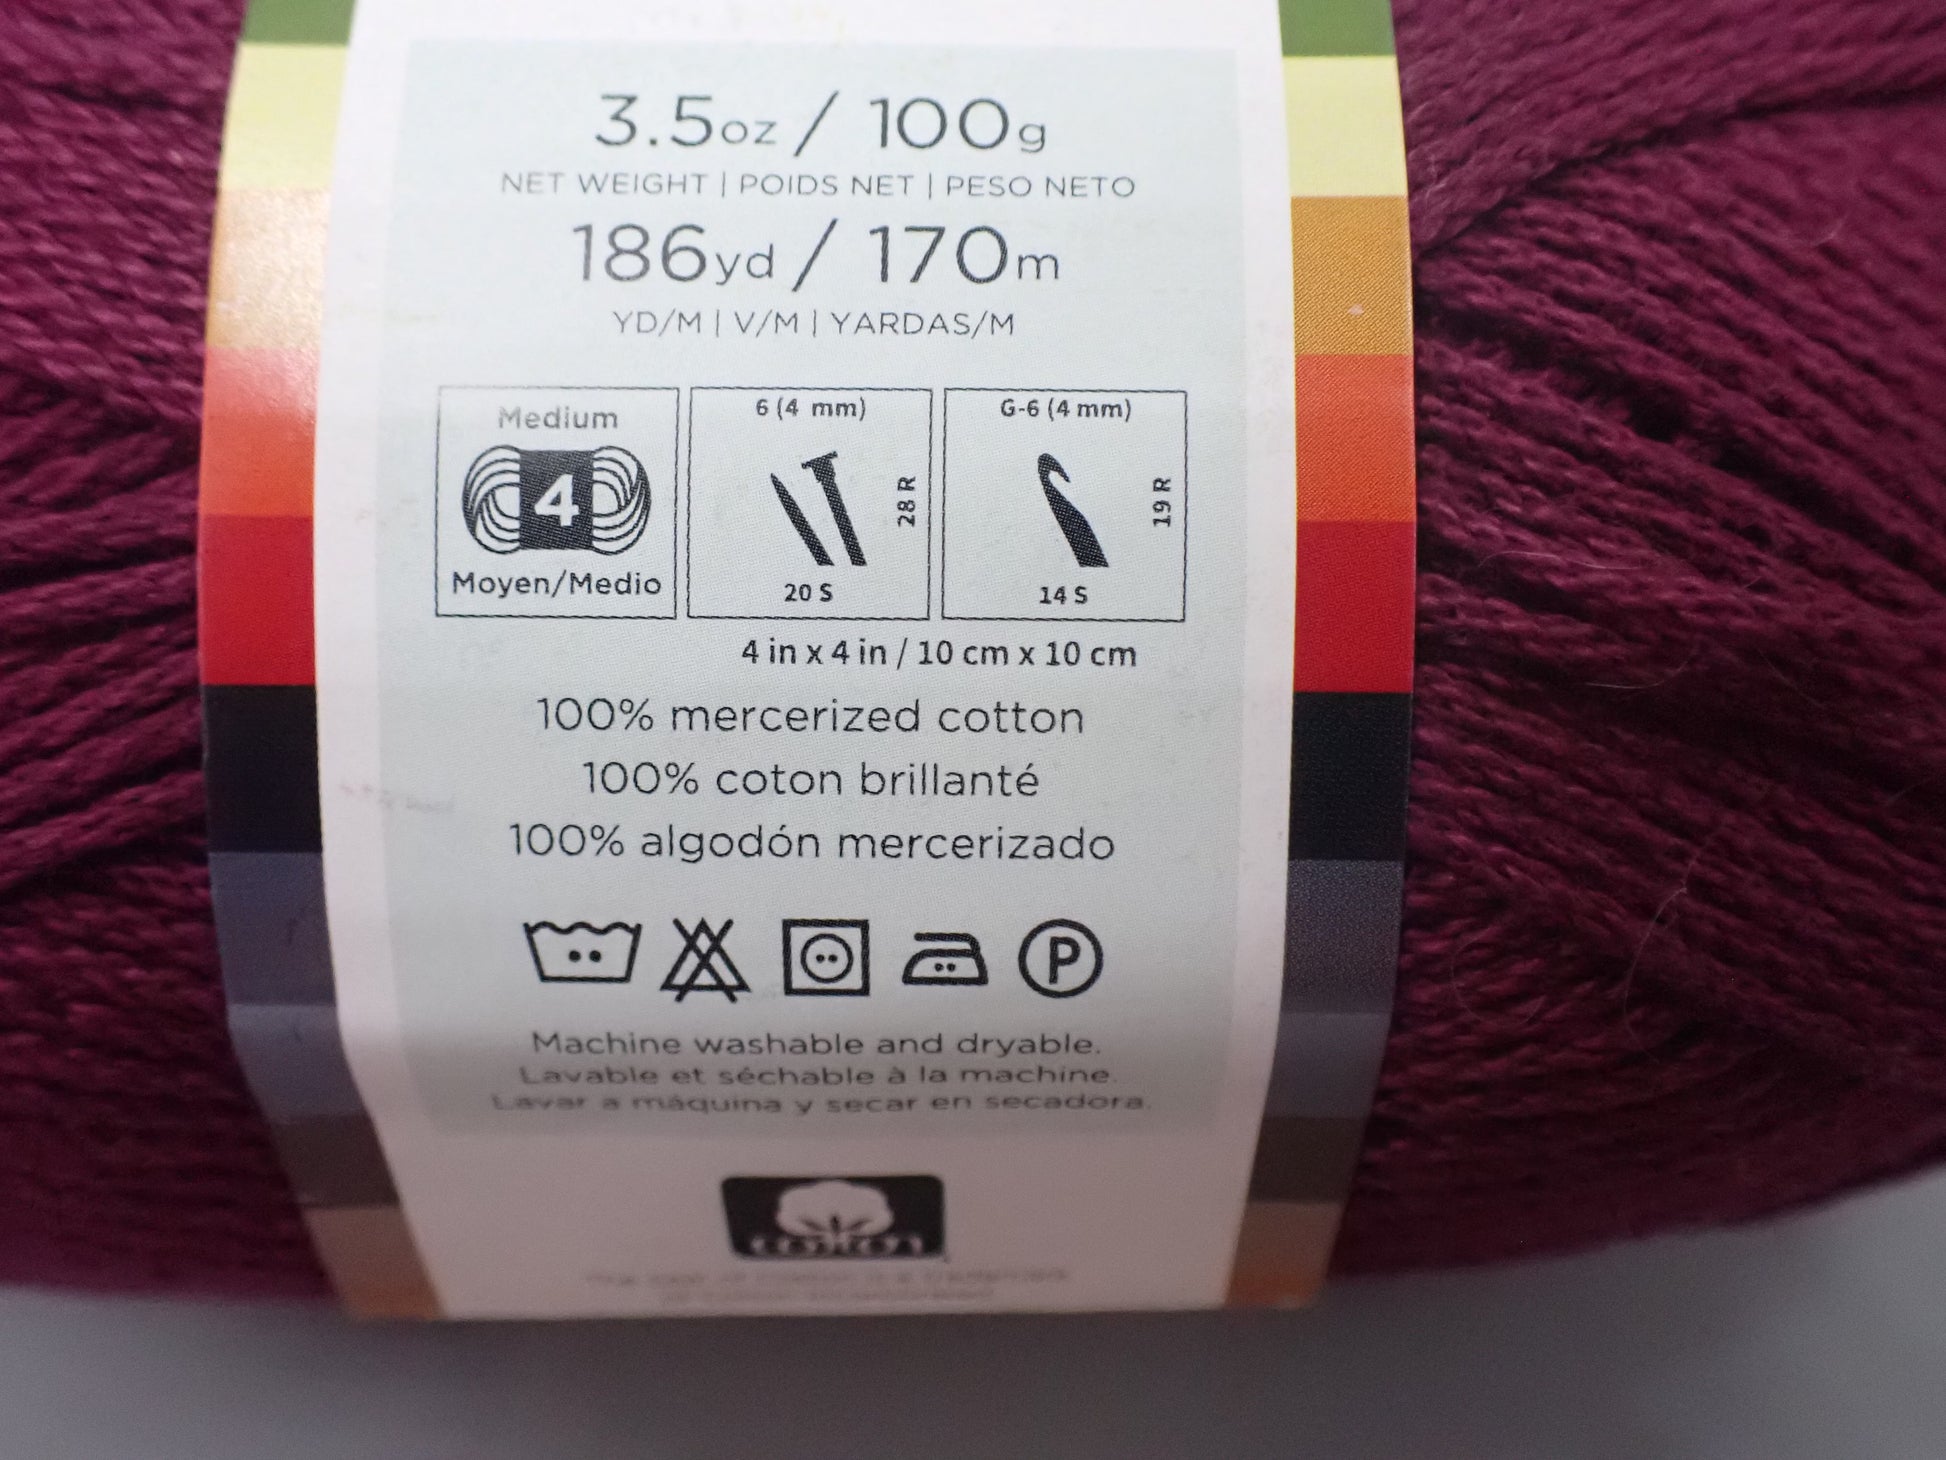 Lion Brand Yarn (1 Skein) Vanna's Choice Yarn, Pink